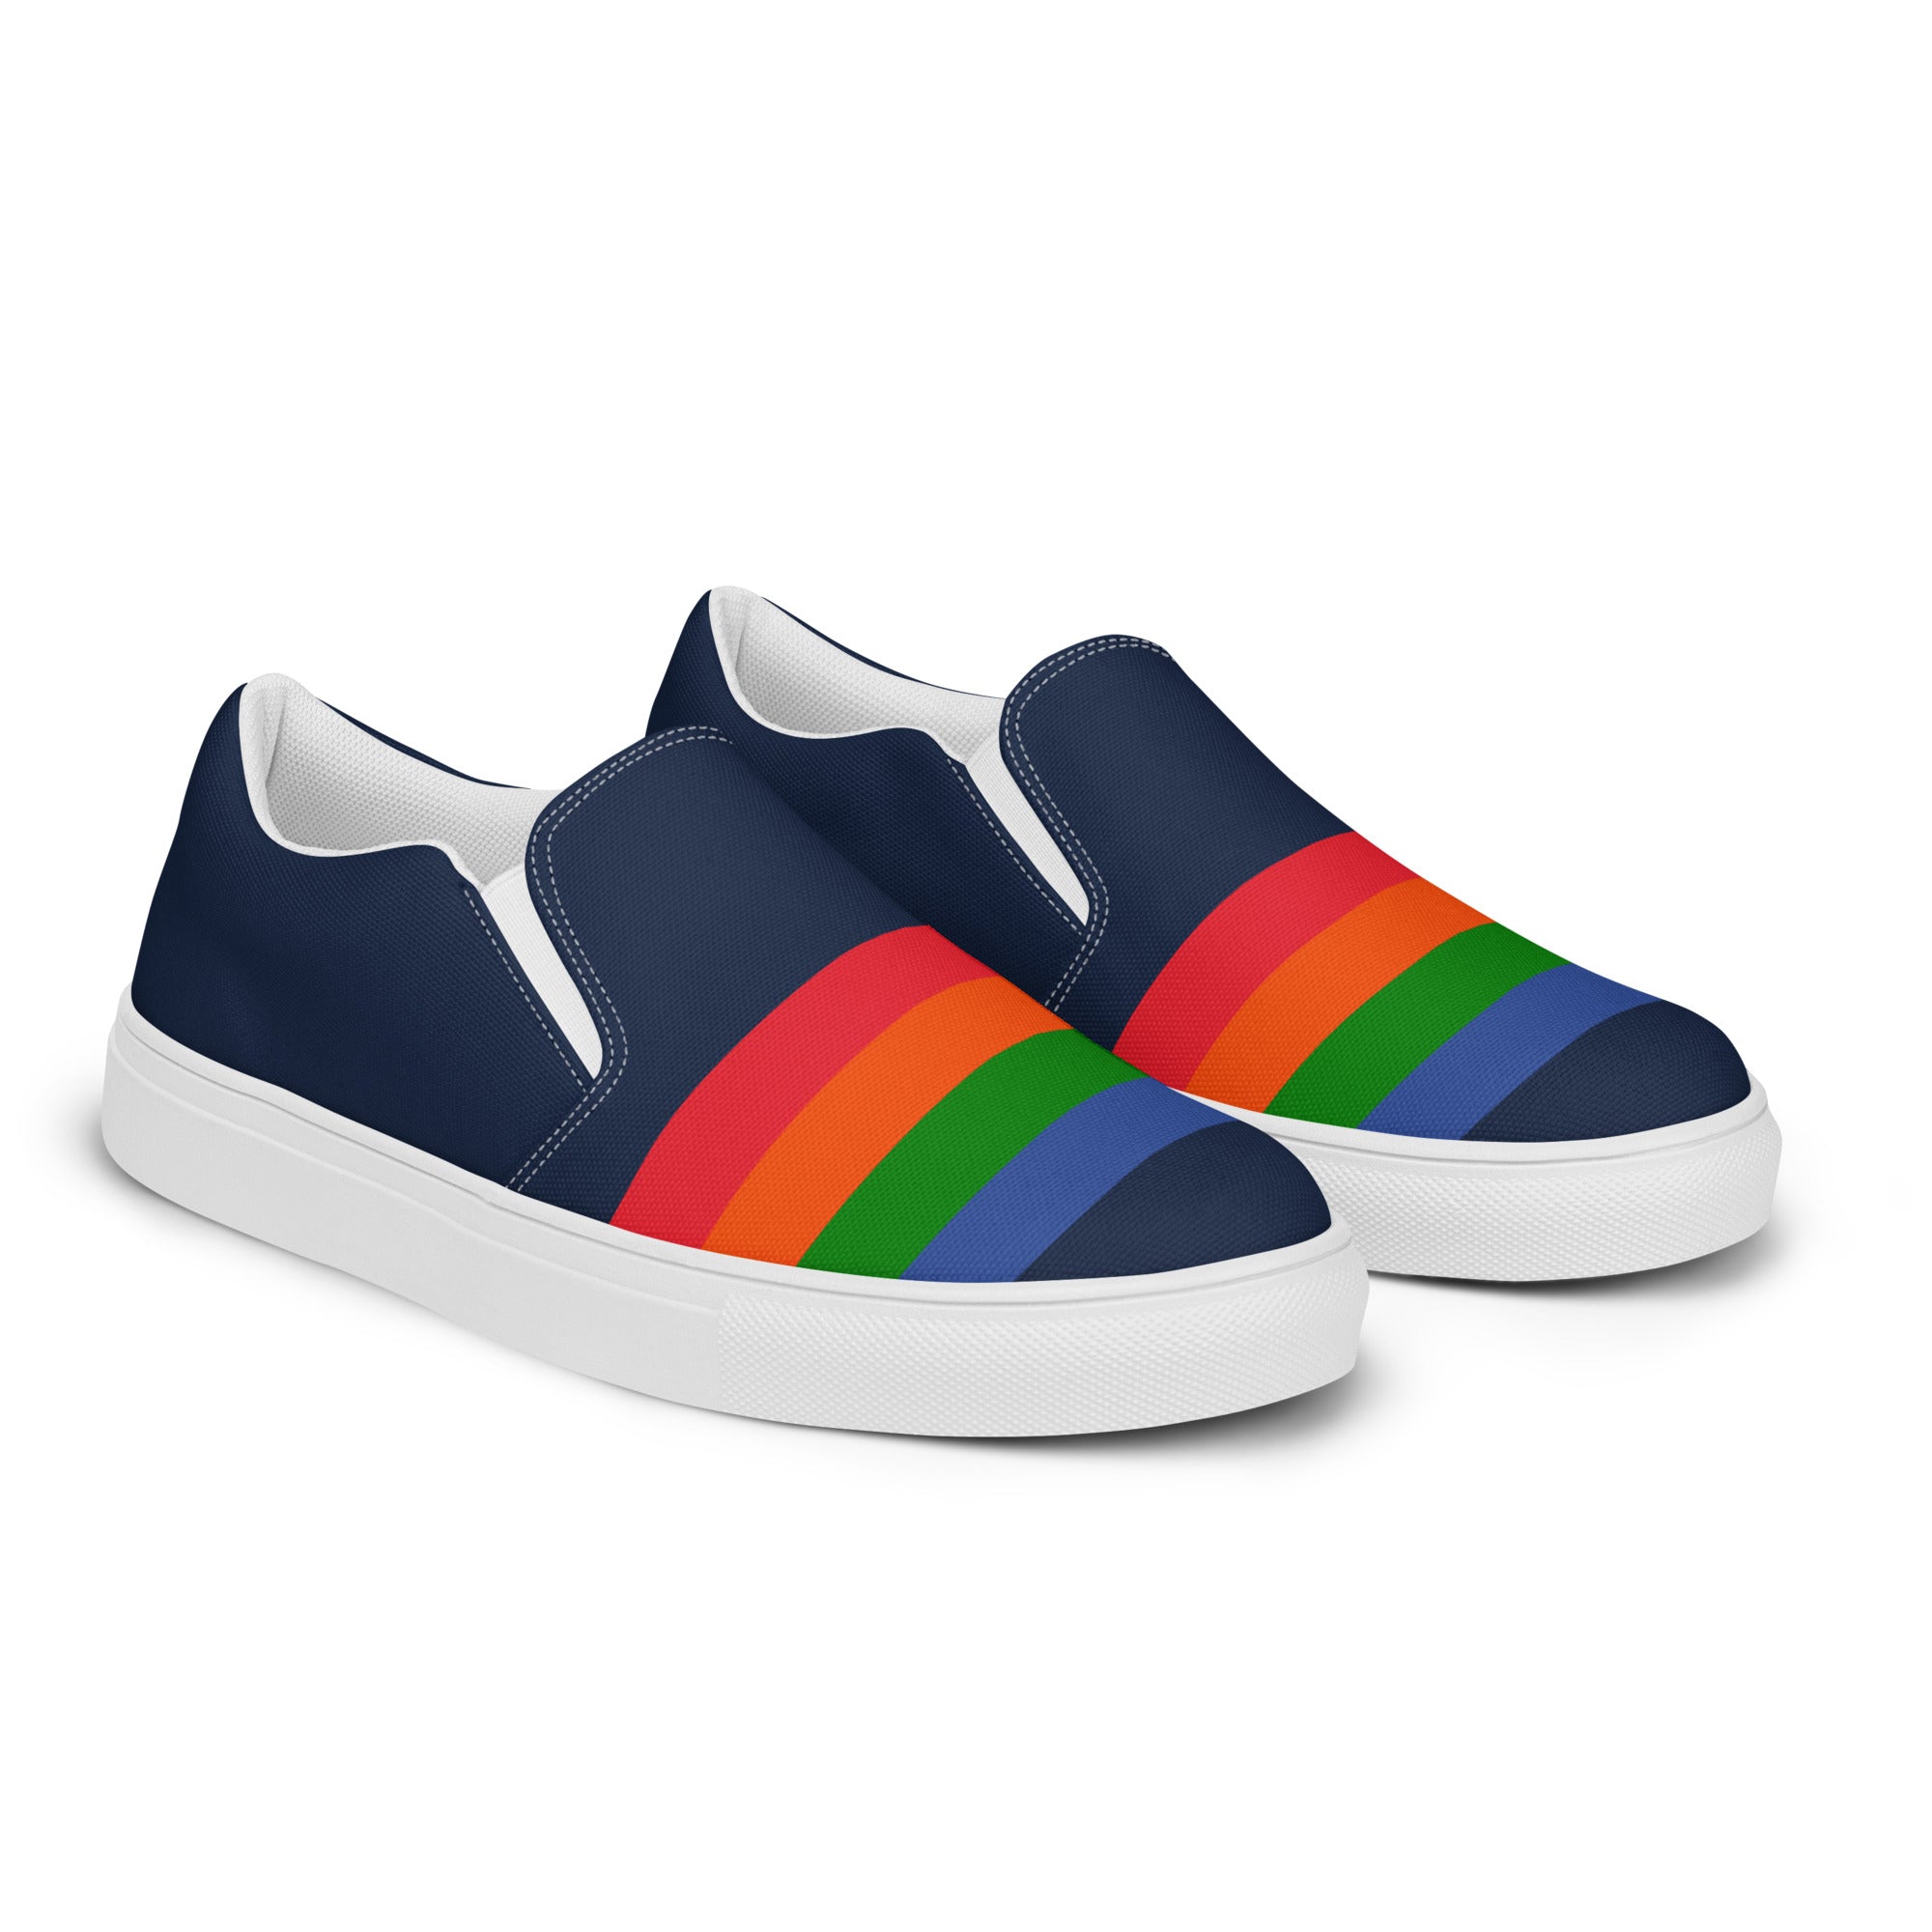 "The Spectrums" Men’s Slip-on Canvas Shoes